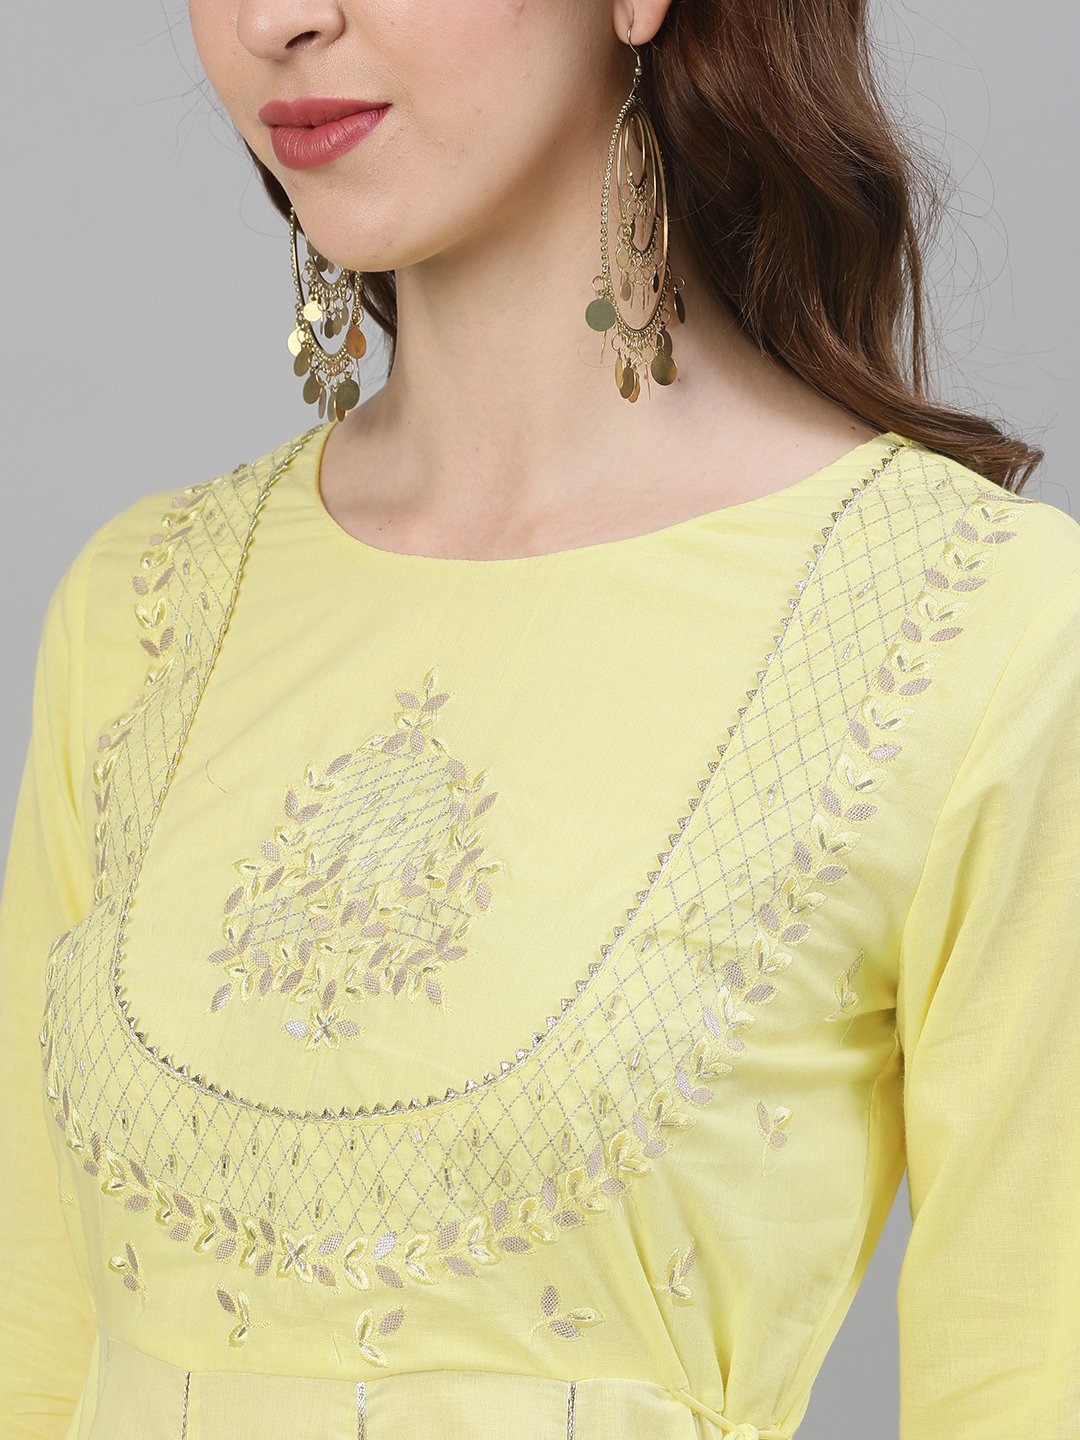 Ishin Women's Cotton Yellow Gota Patti Embroidered Anarkali Dress